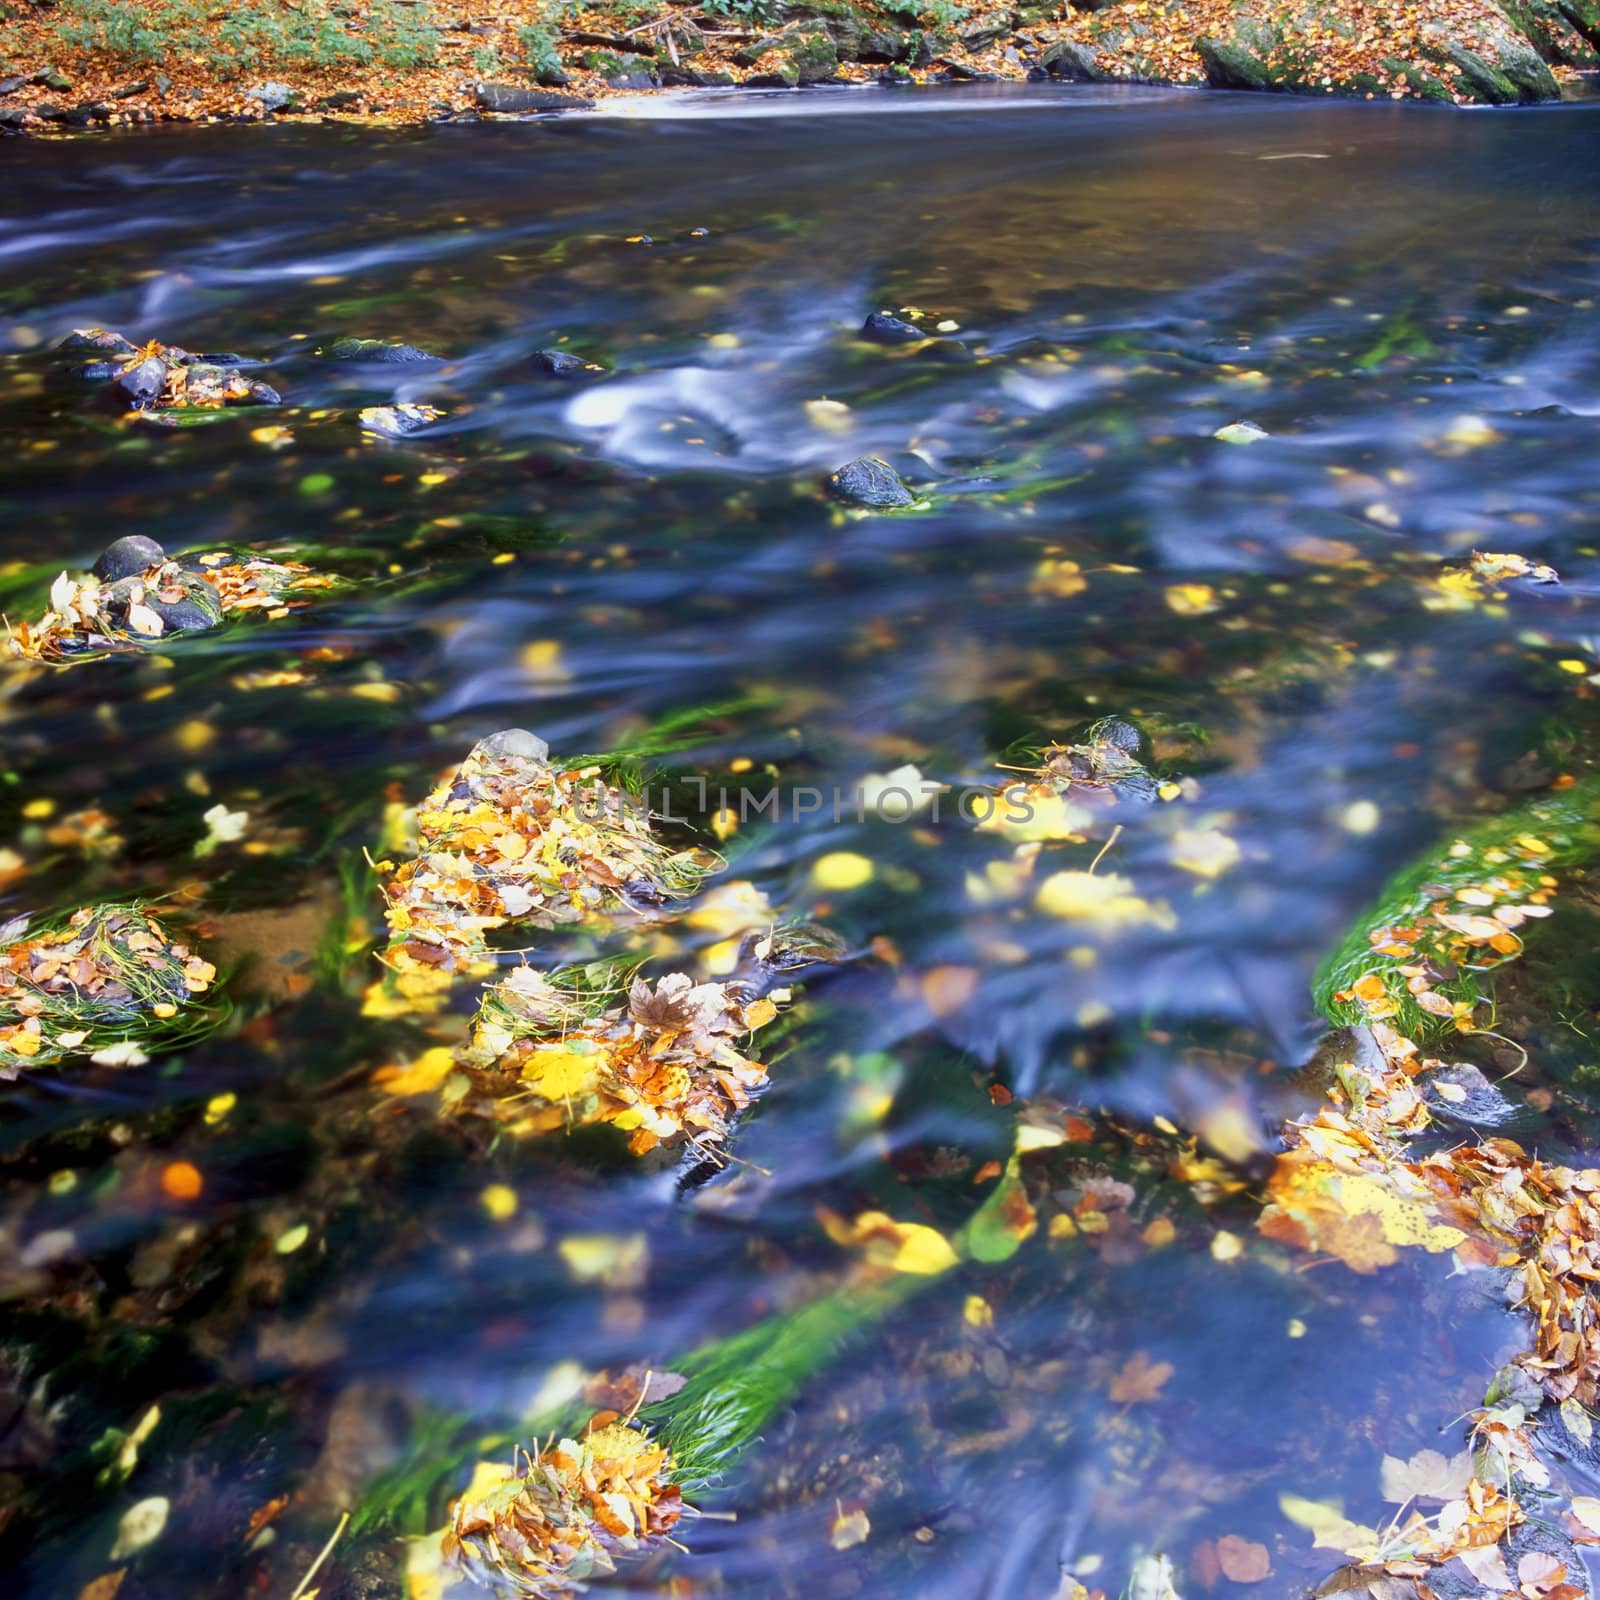 the Metuje river in autumn, Czech Republic